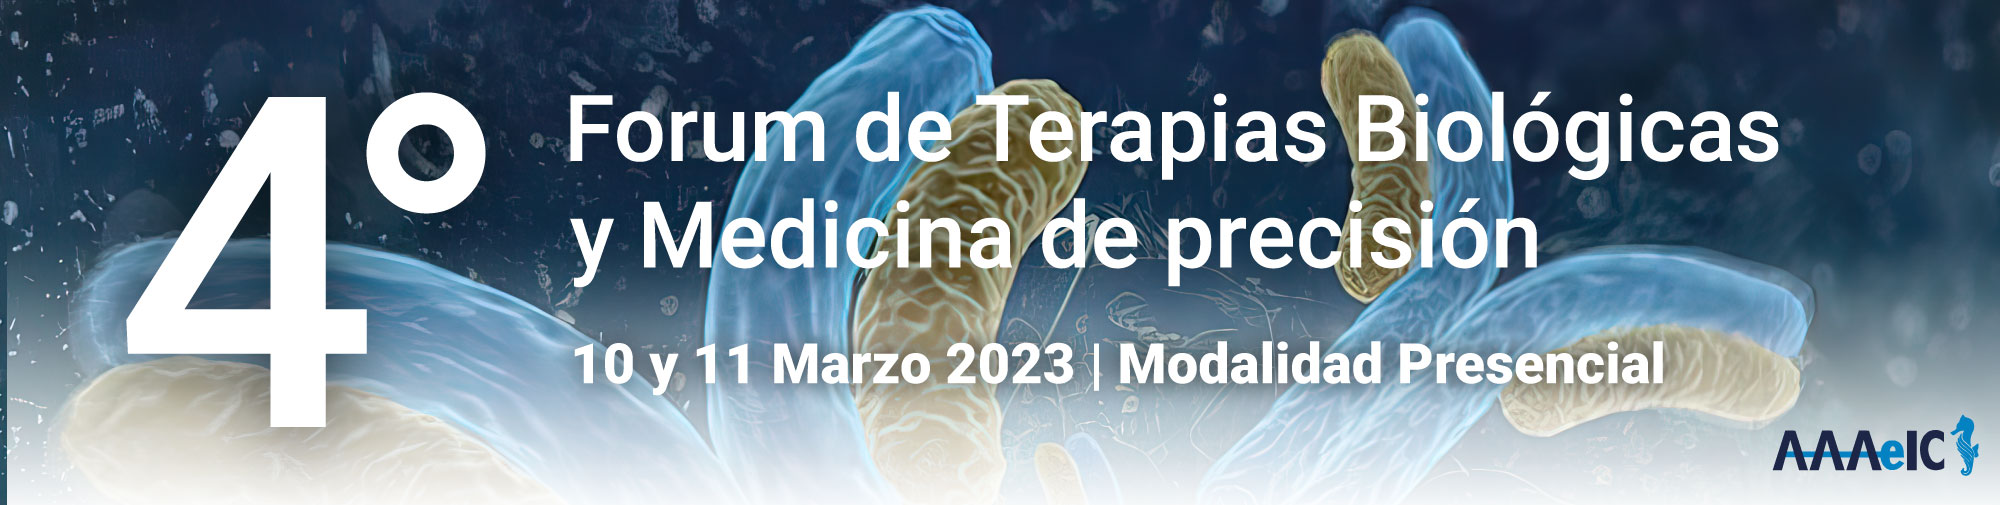 4° Forum de Terapias Biológicas y Medicina de precisión 